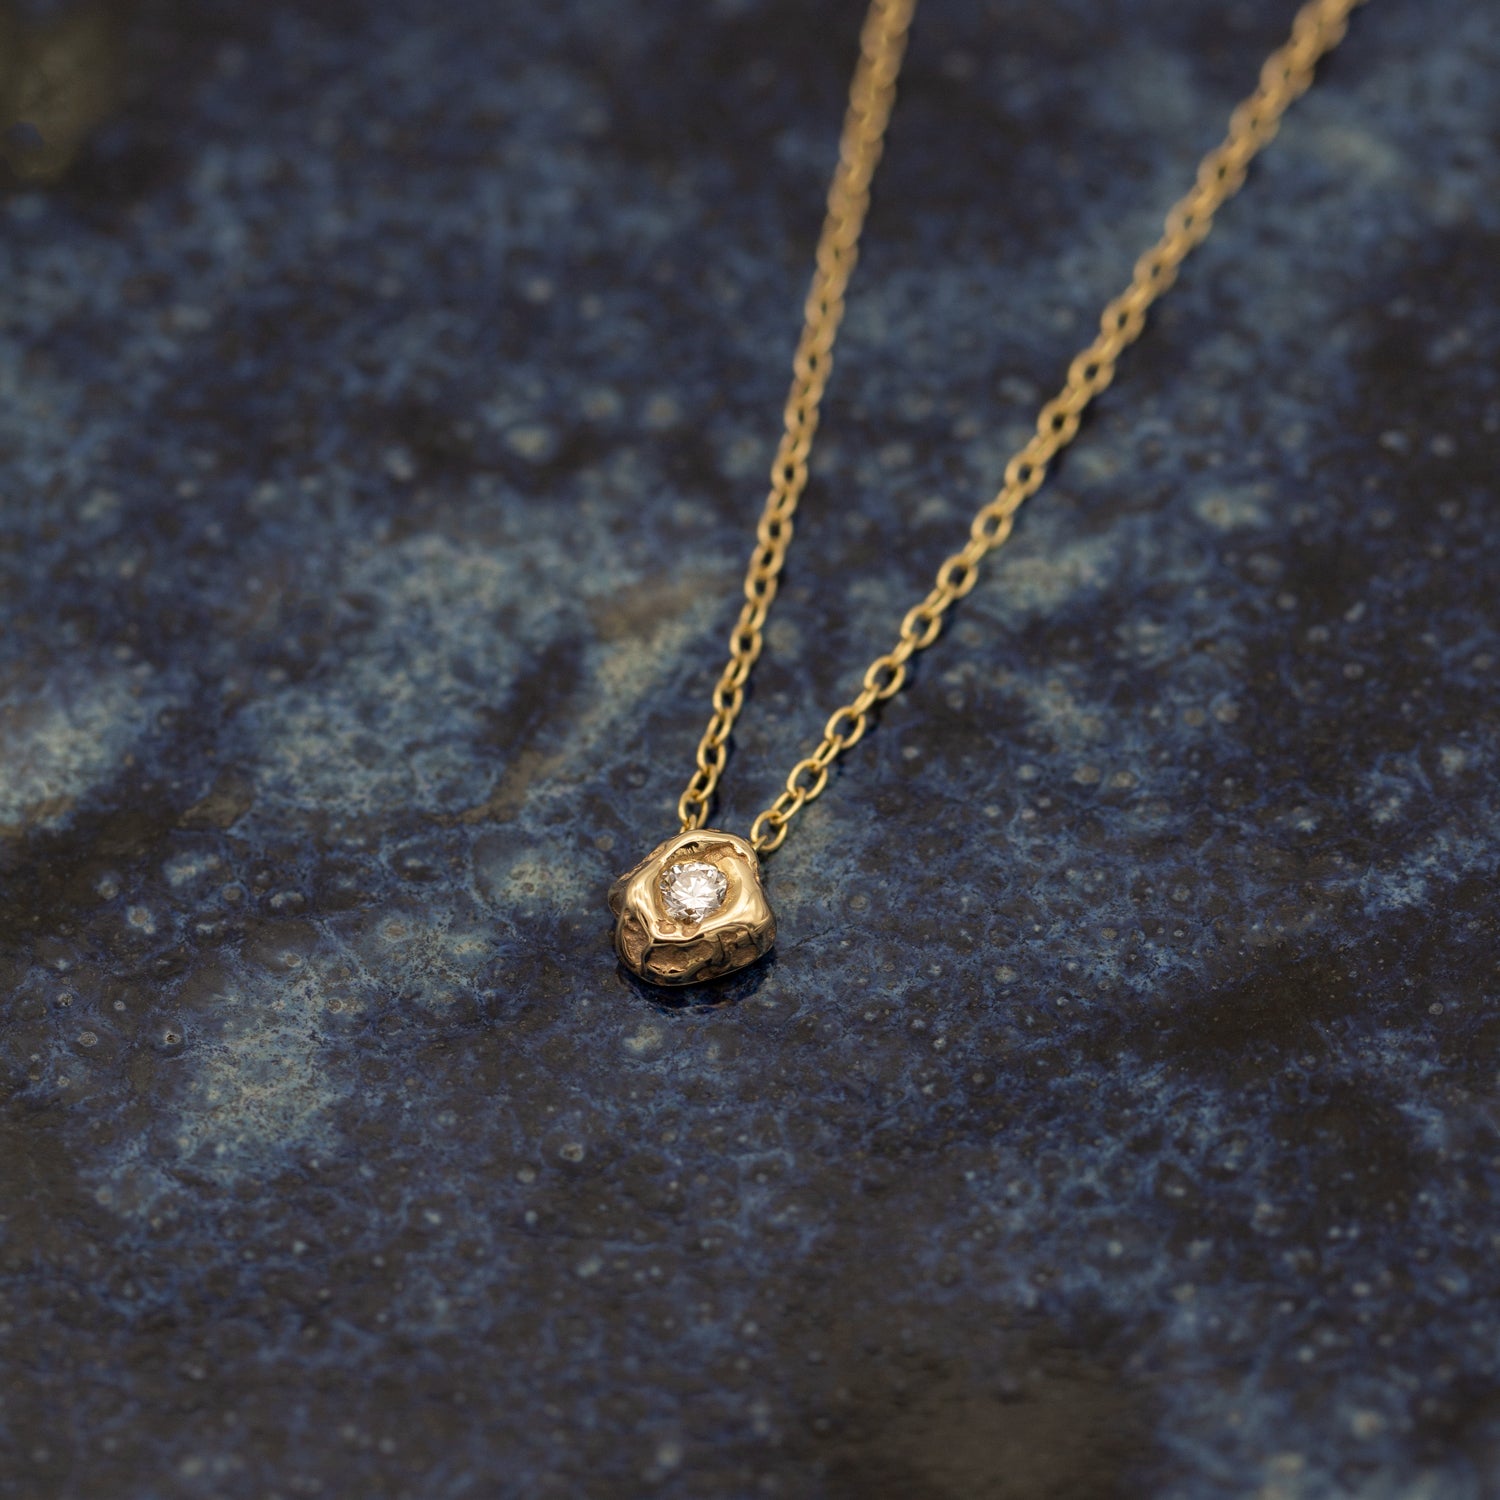 Halskæde i guld med vedhæng ligger på en keramisk overflade med mørke blå glasur. Halskæden i guld har et vedhæng der er formgivet organisk som et stykke fjeld, med en stor hvid diamant i midten der glimter.